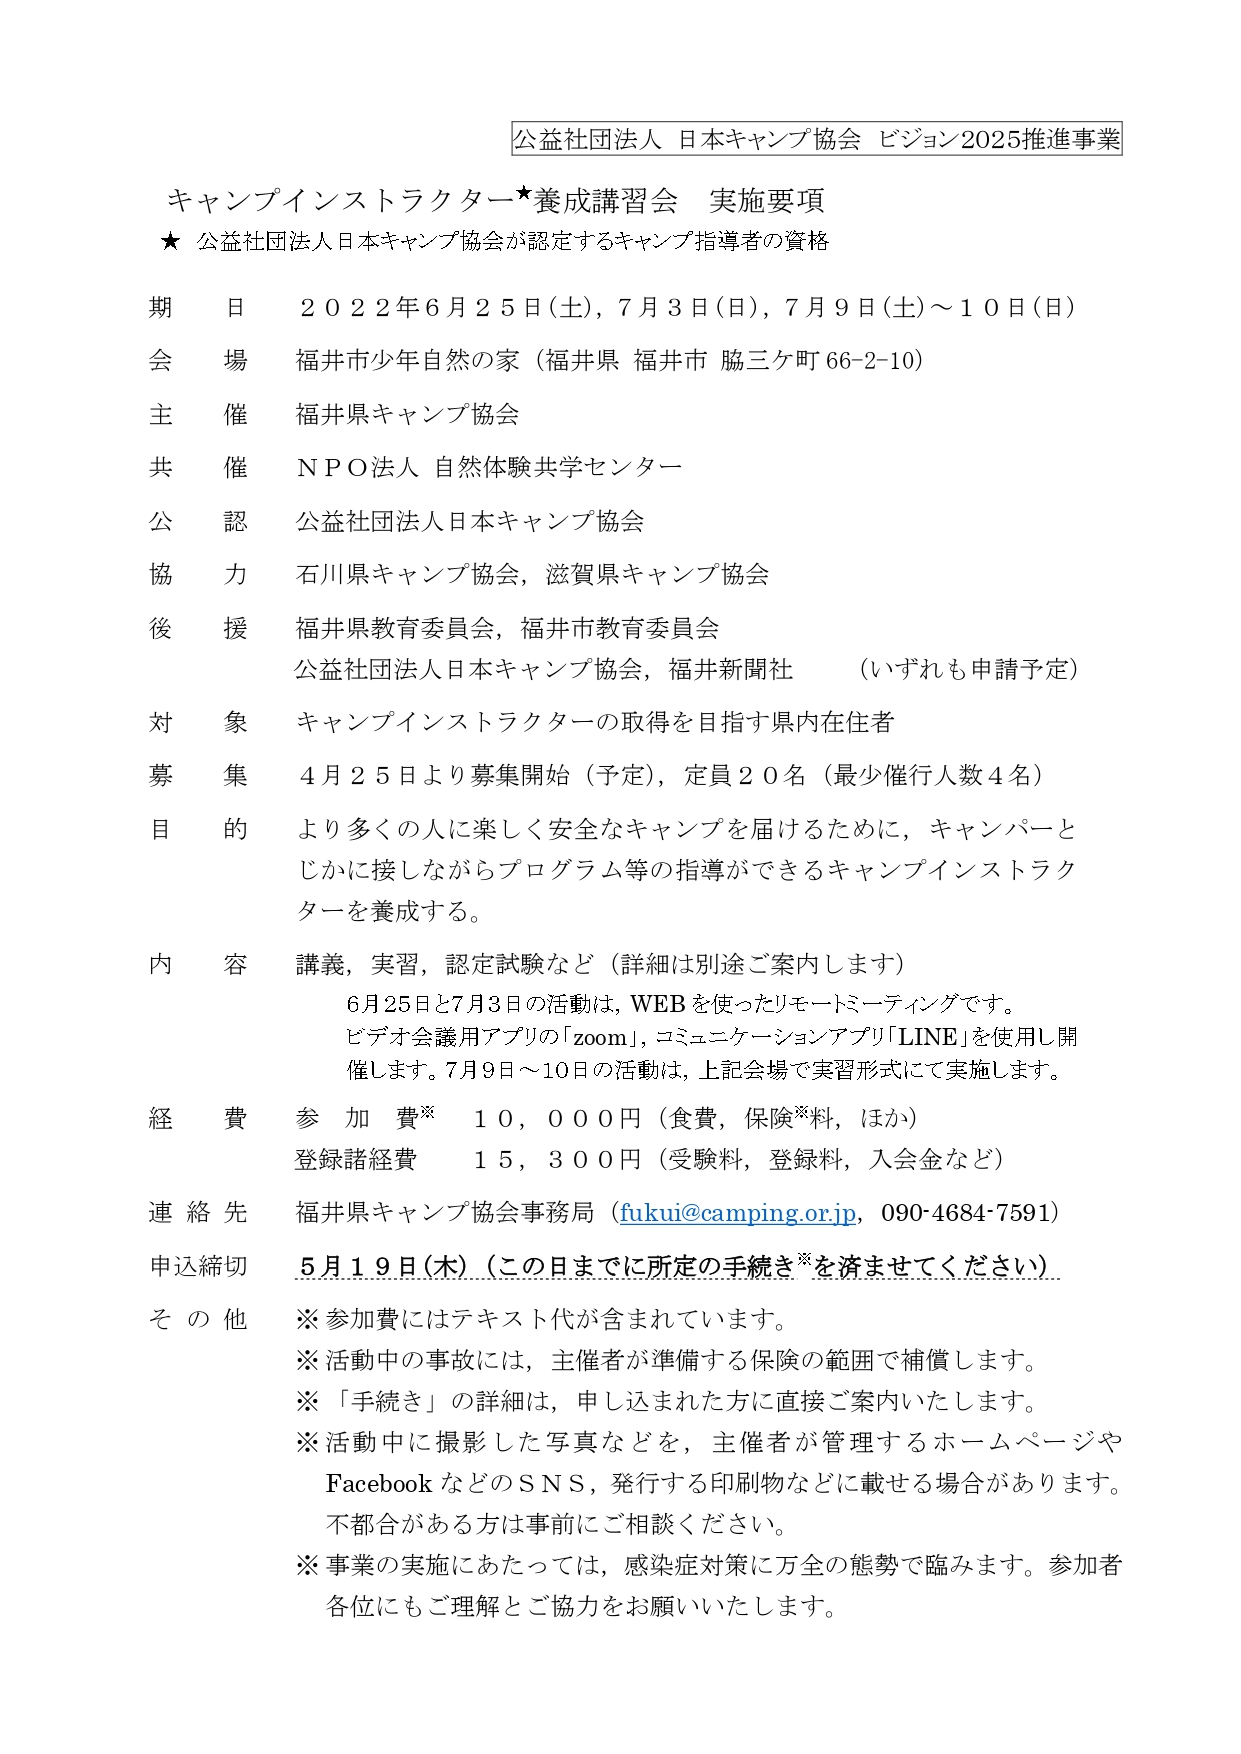 福井：キャンプインストラクター養成講習会（6/25 & 7/3 & 7/9～10） @ オンライン